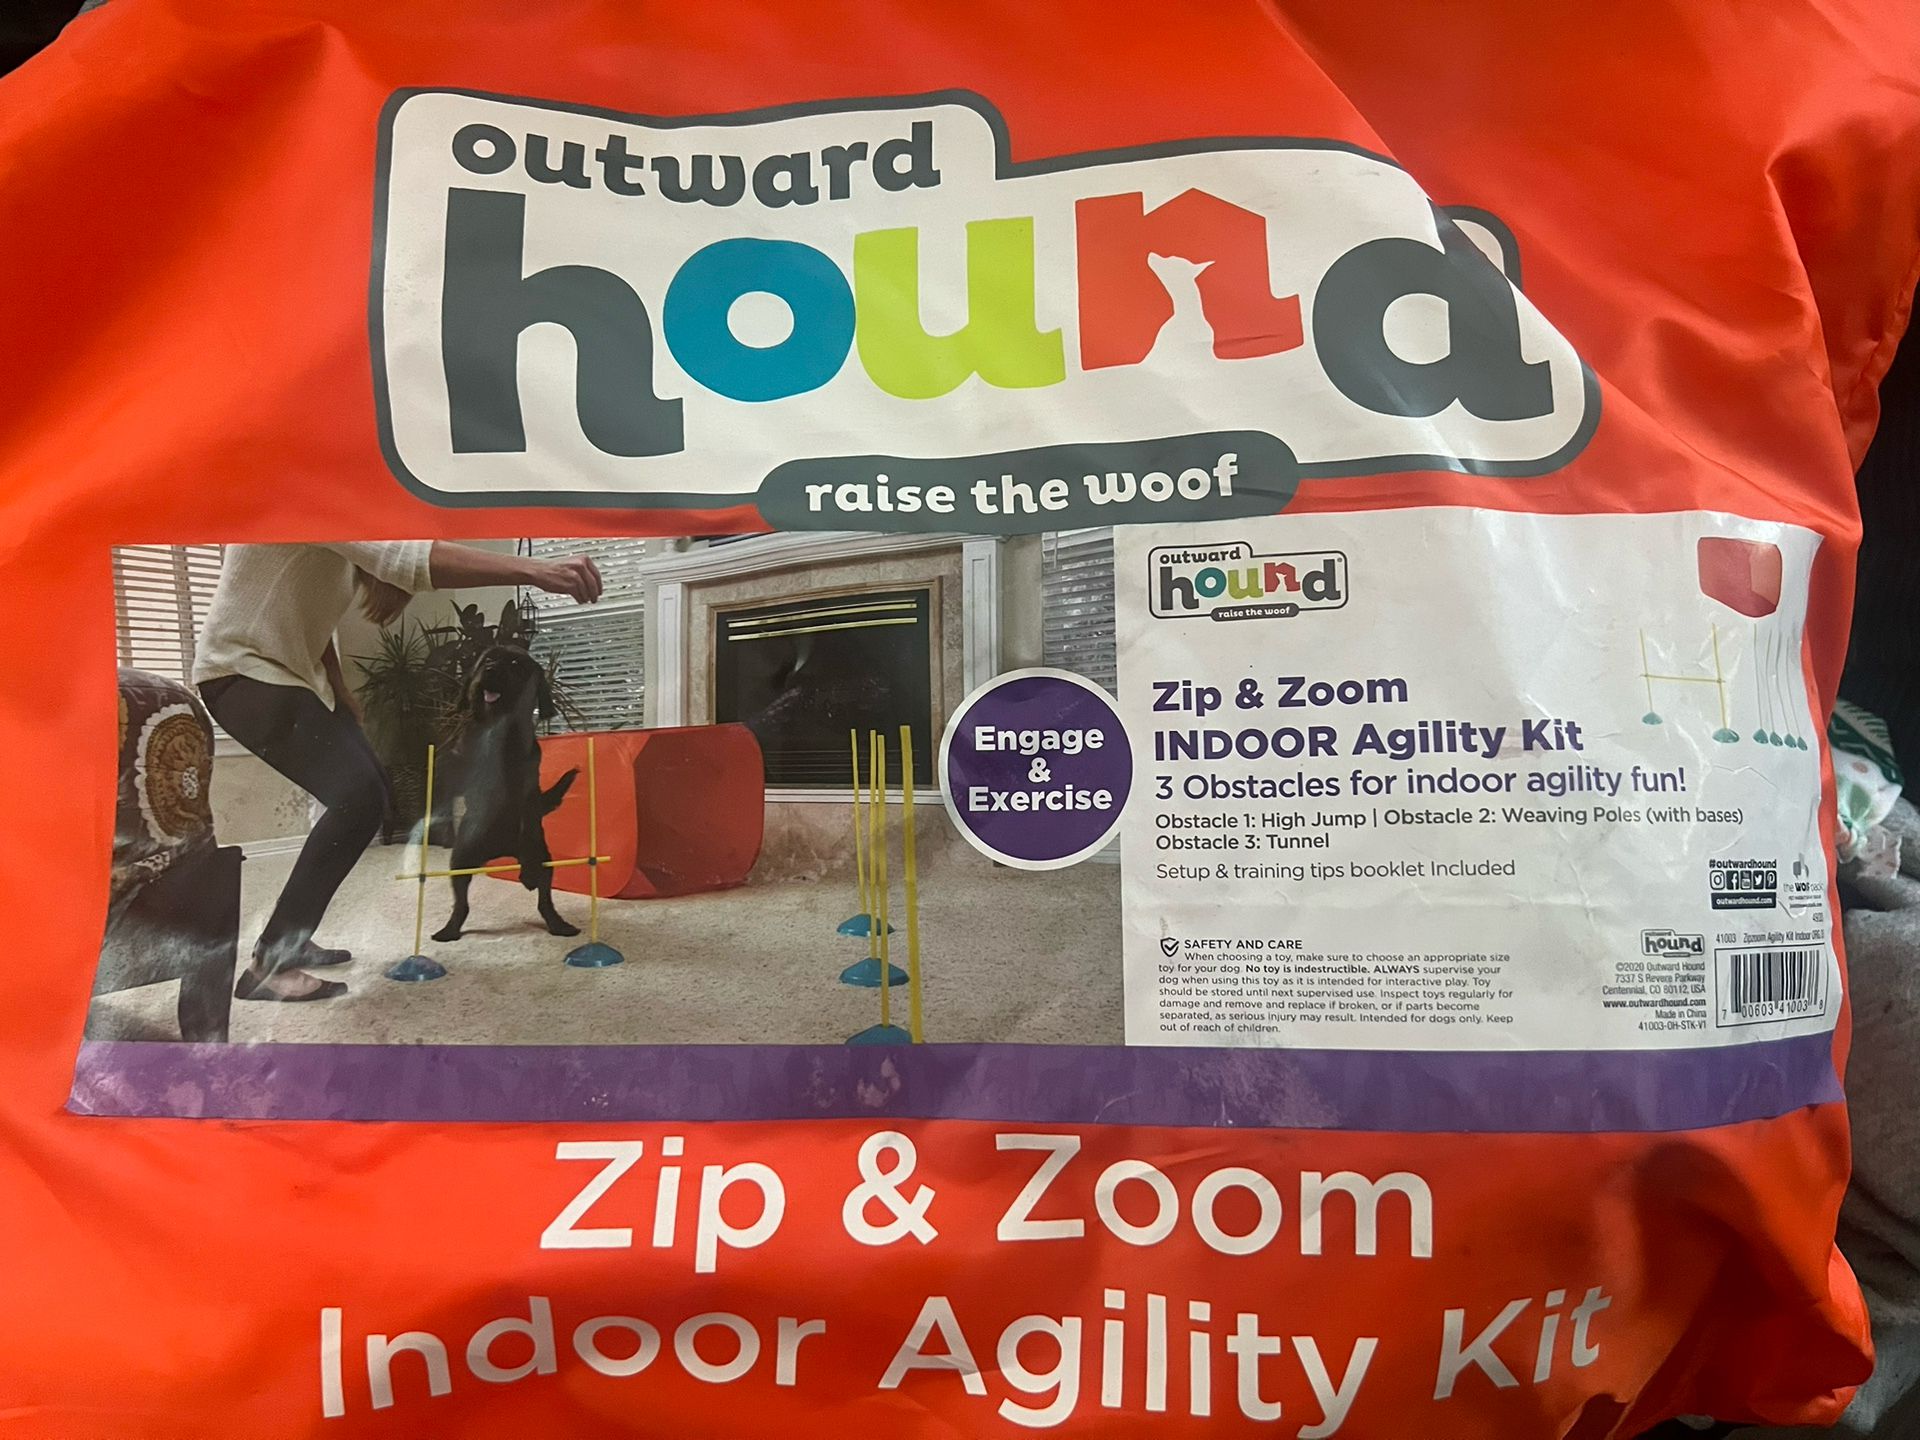 Dog Indoor Agility Kit